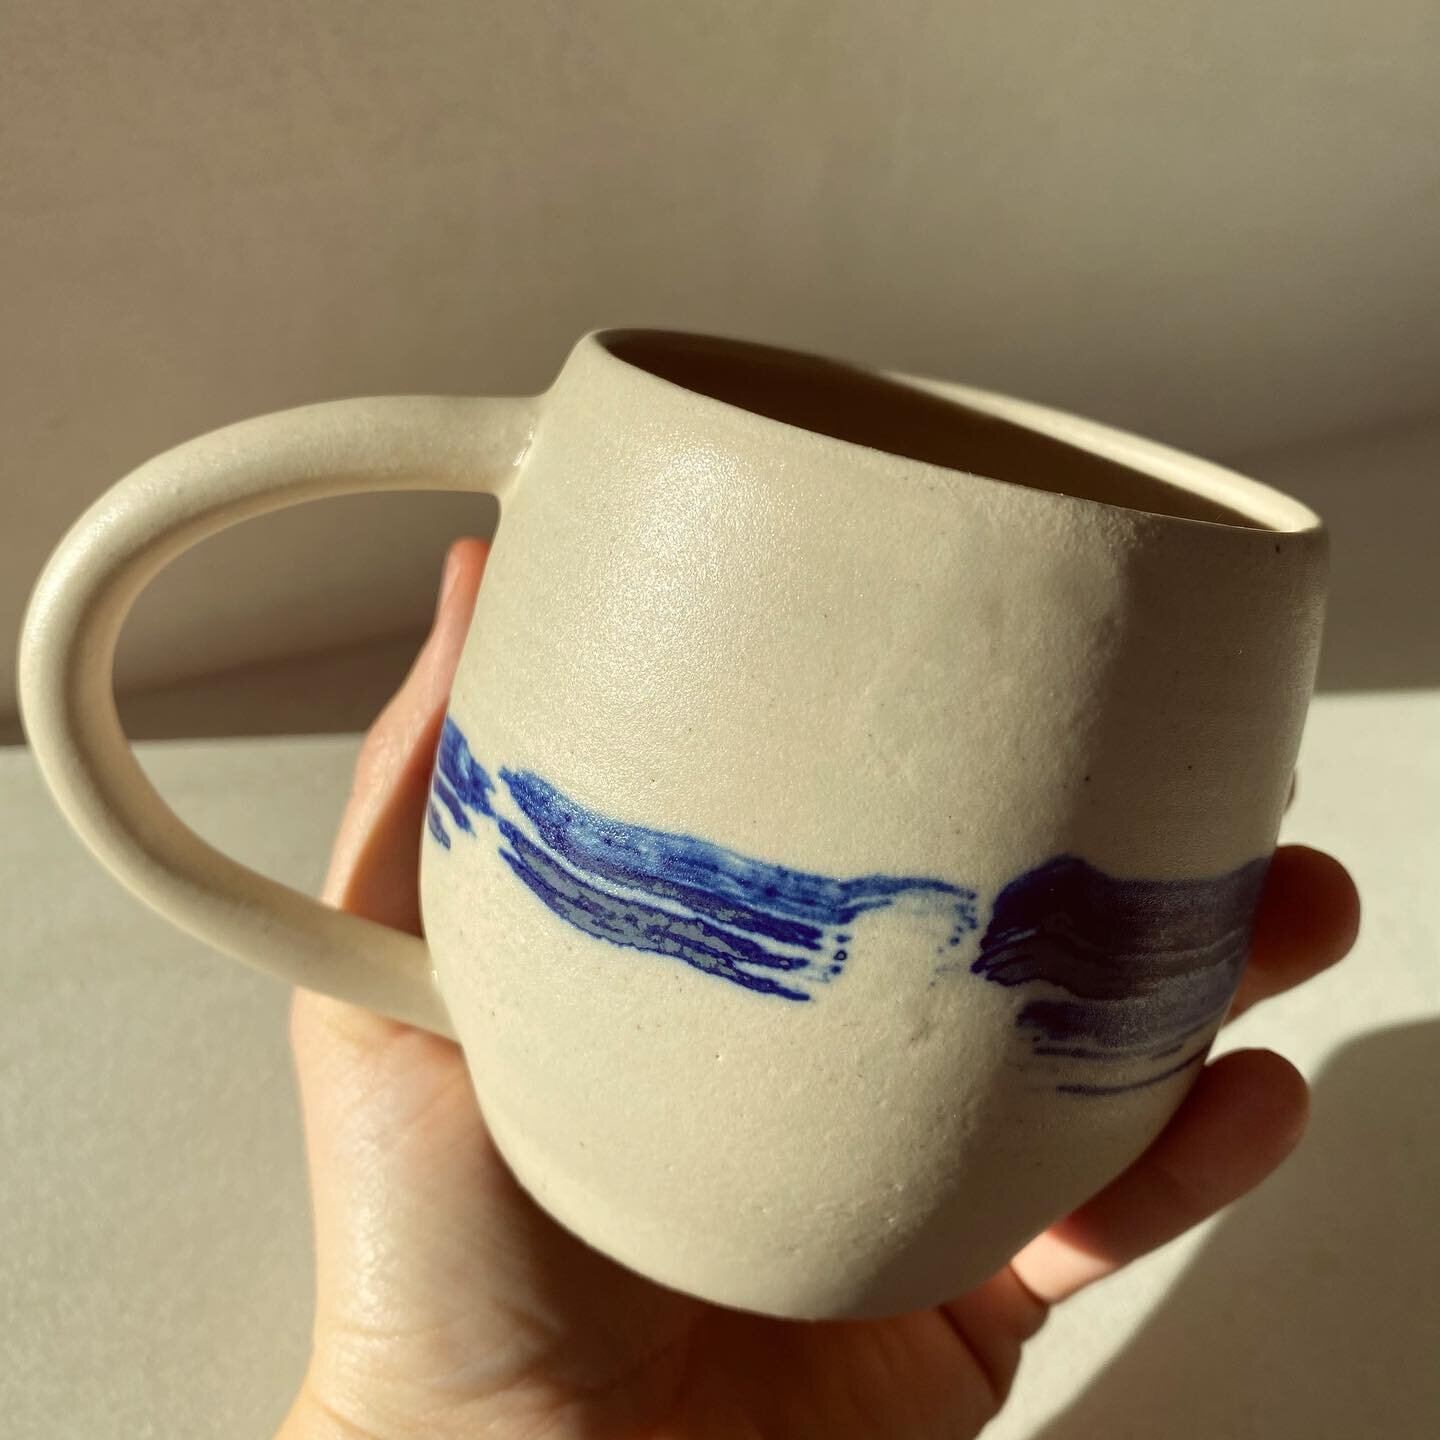 Winter mug, winter light ✨